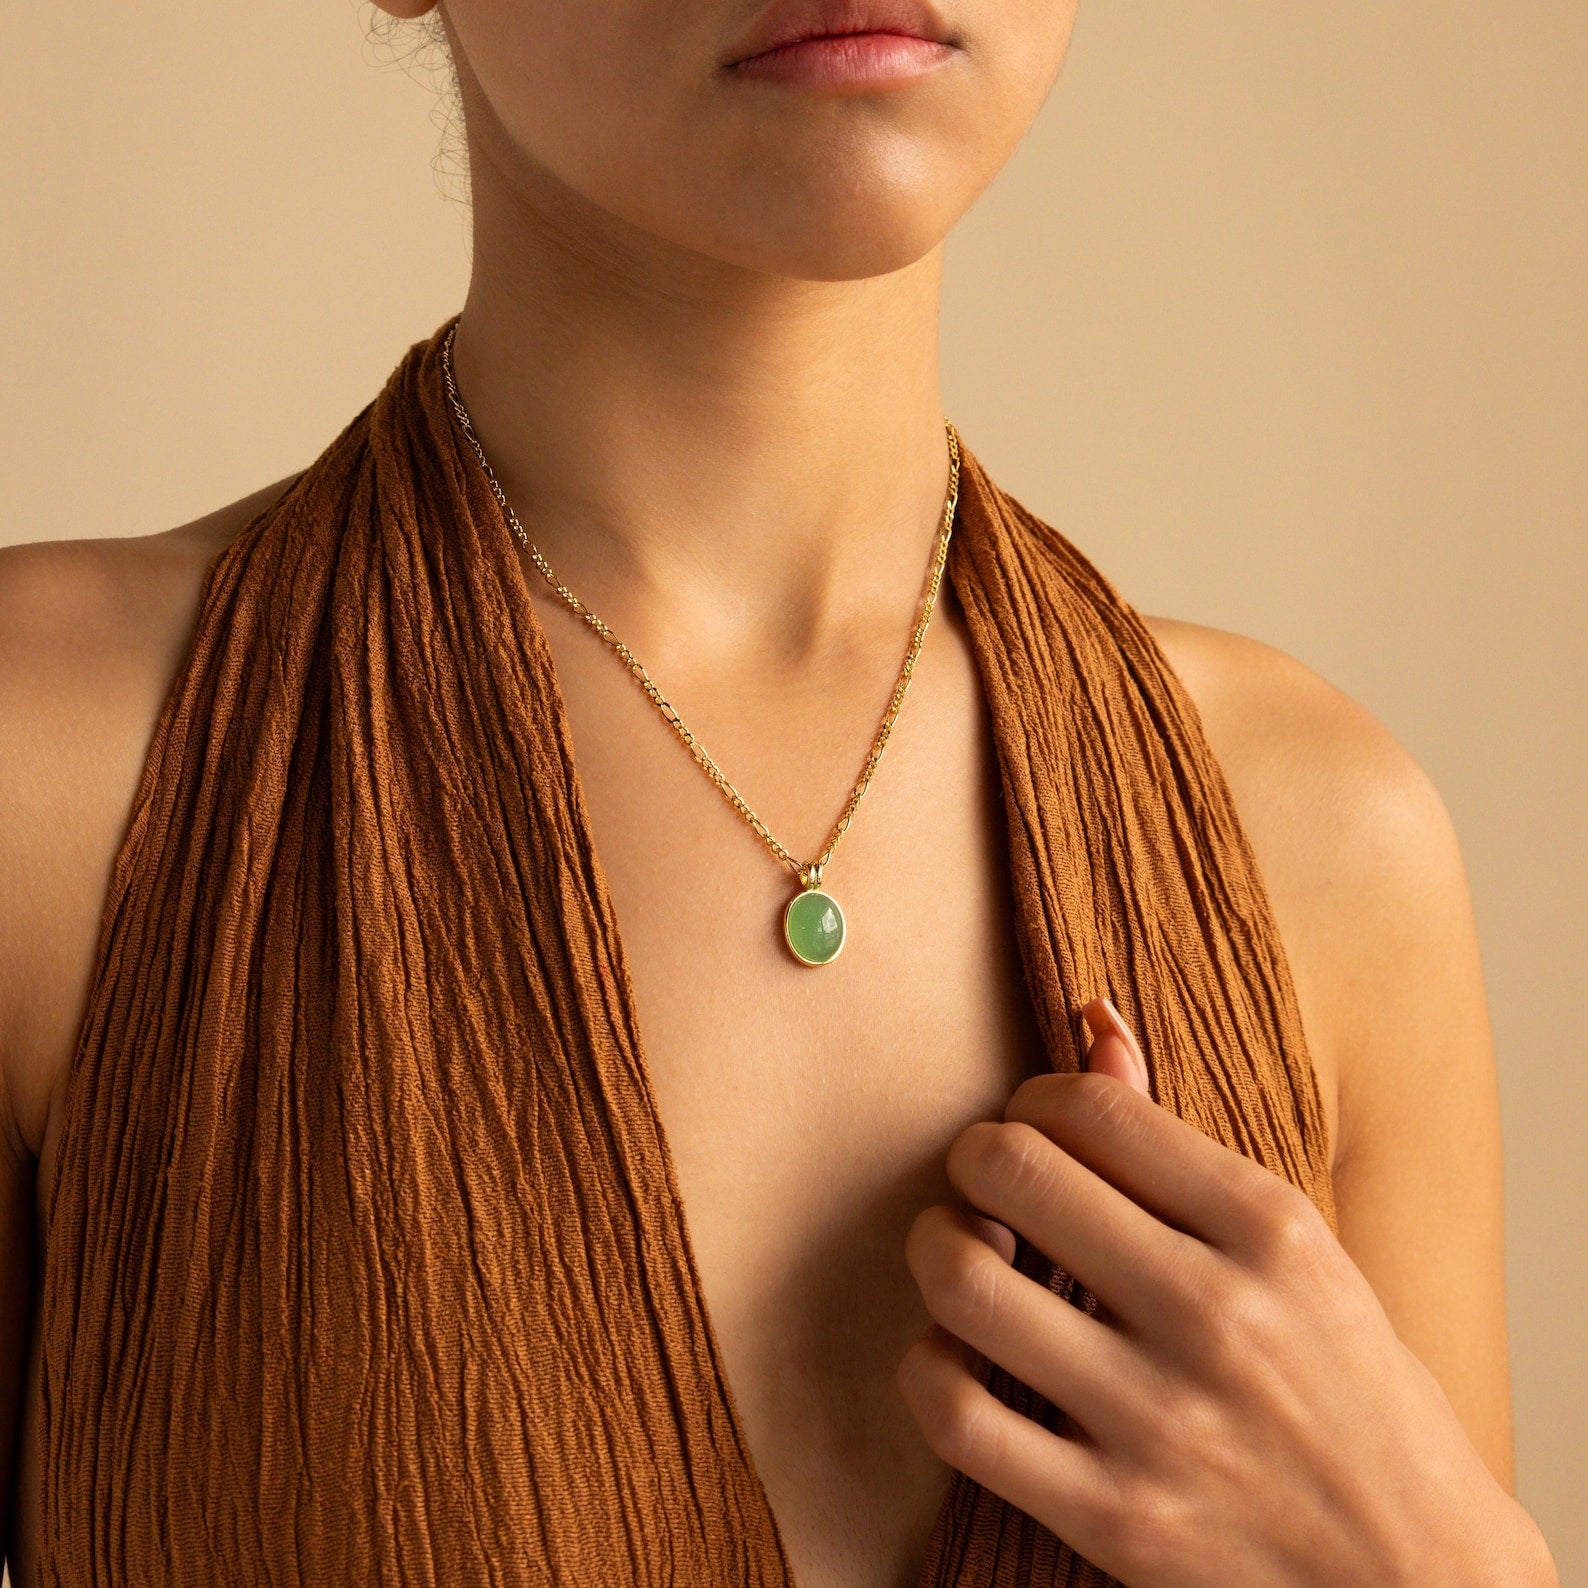 Jade Oval Pendant Necklace